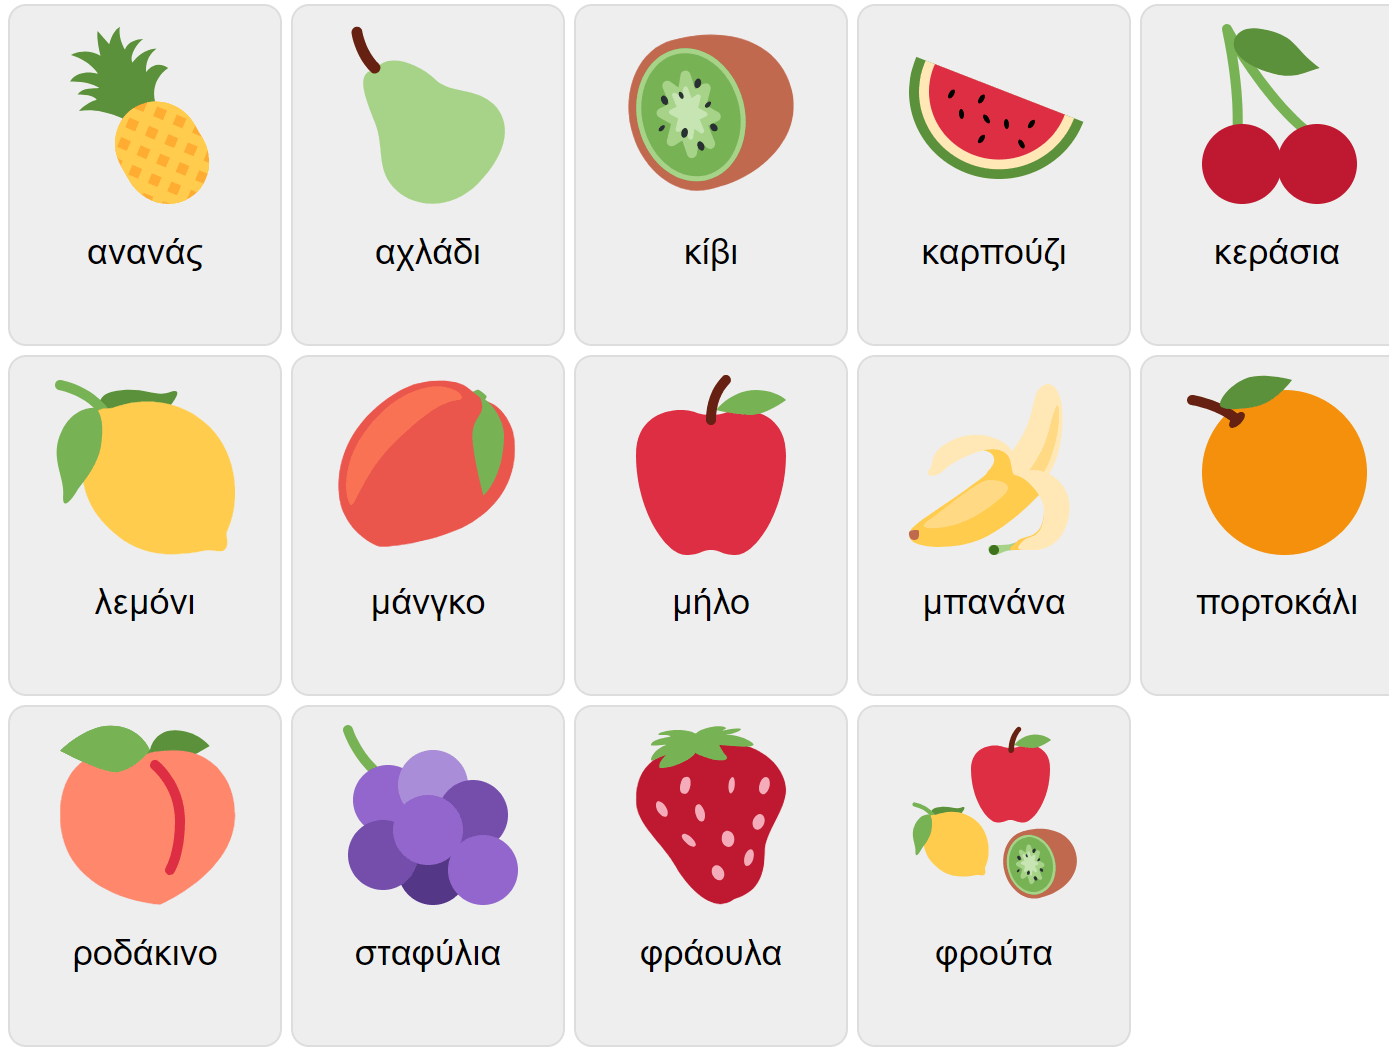 Fruits in Greek